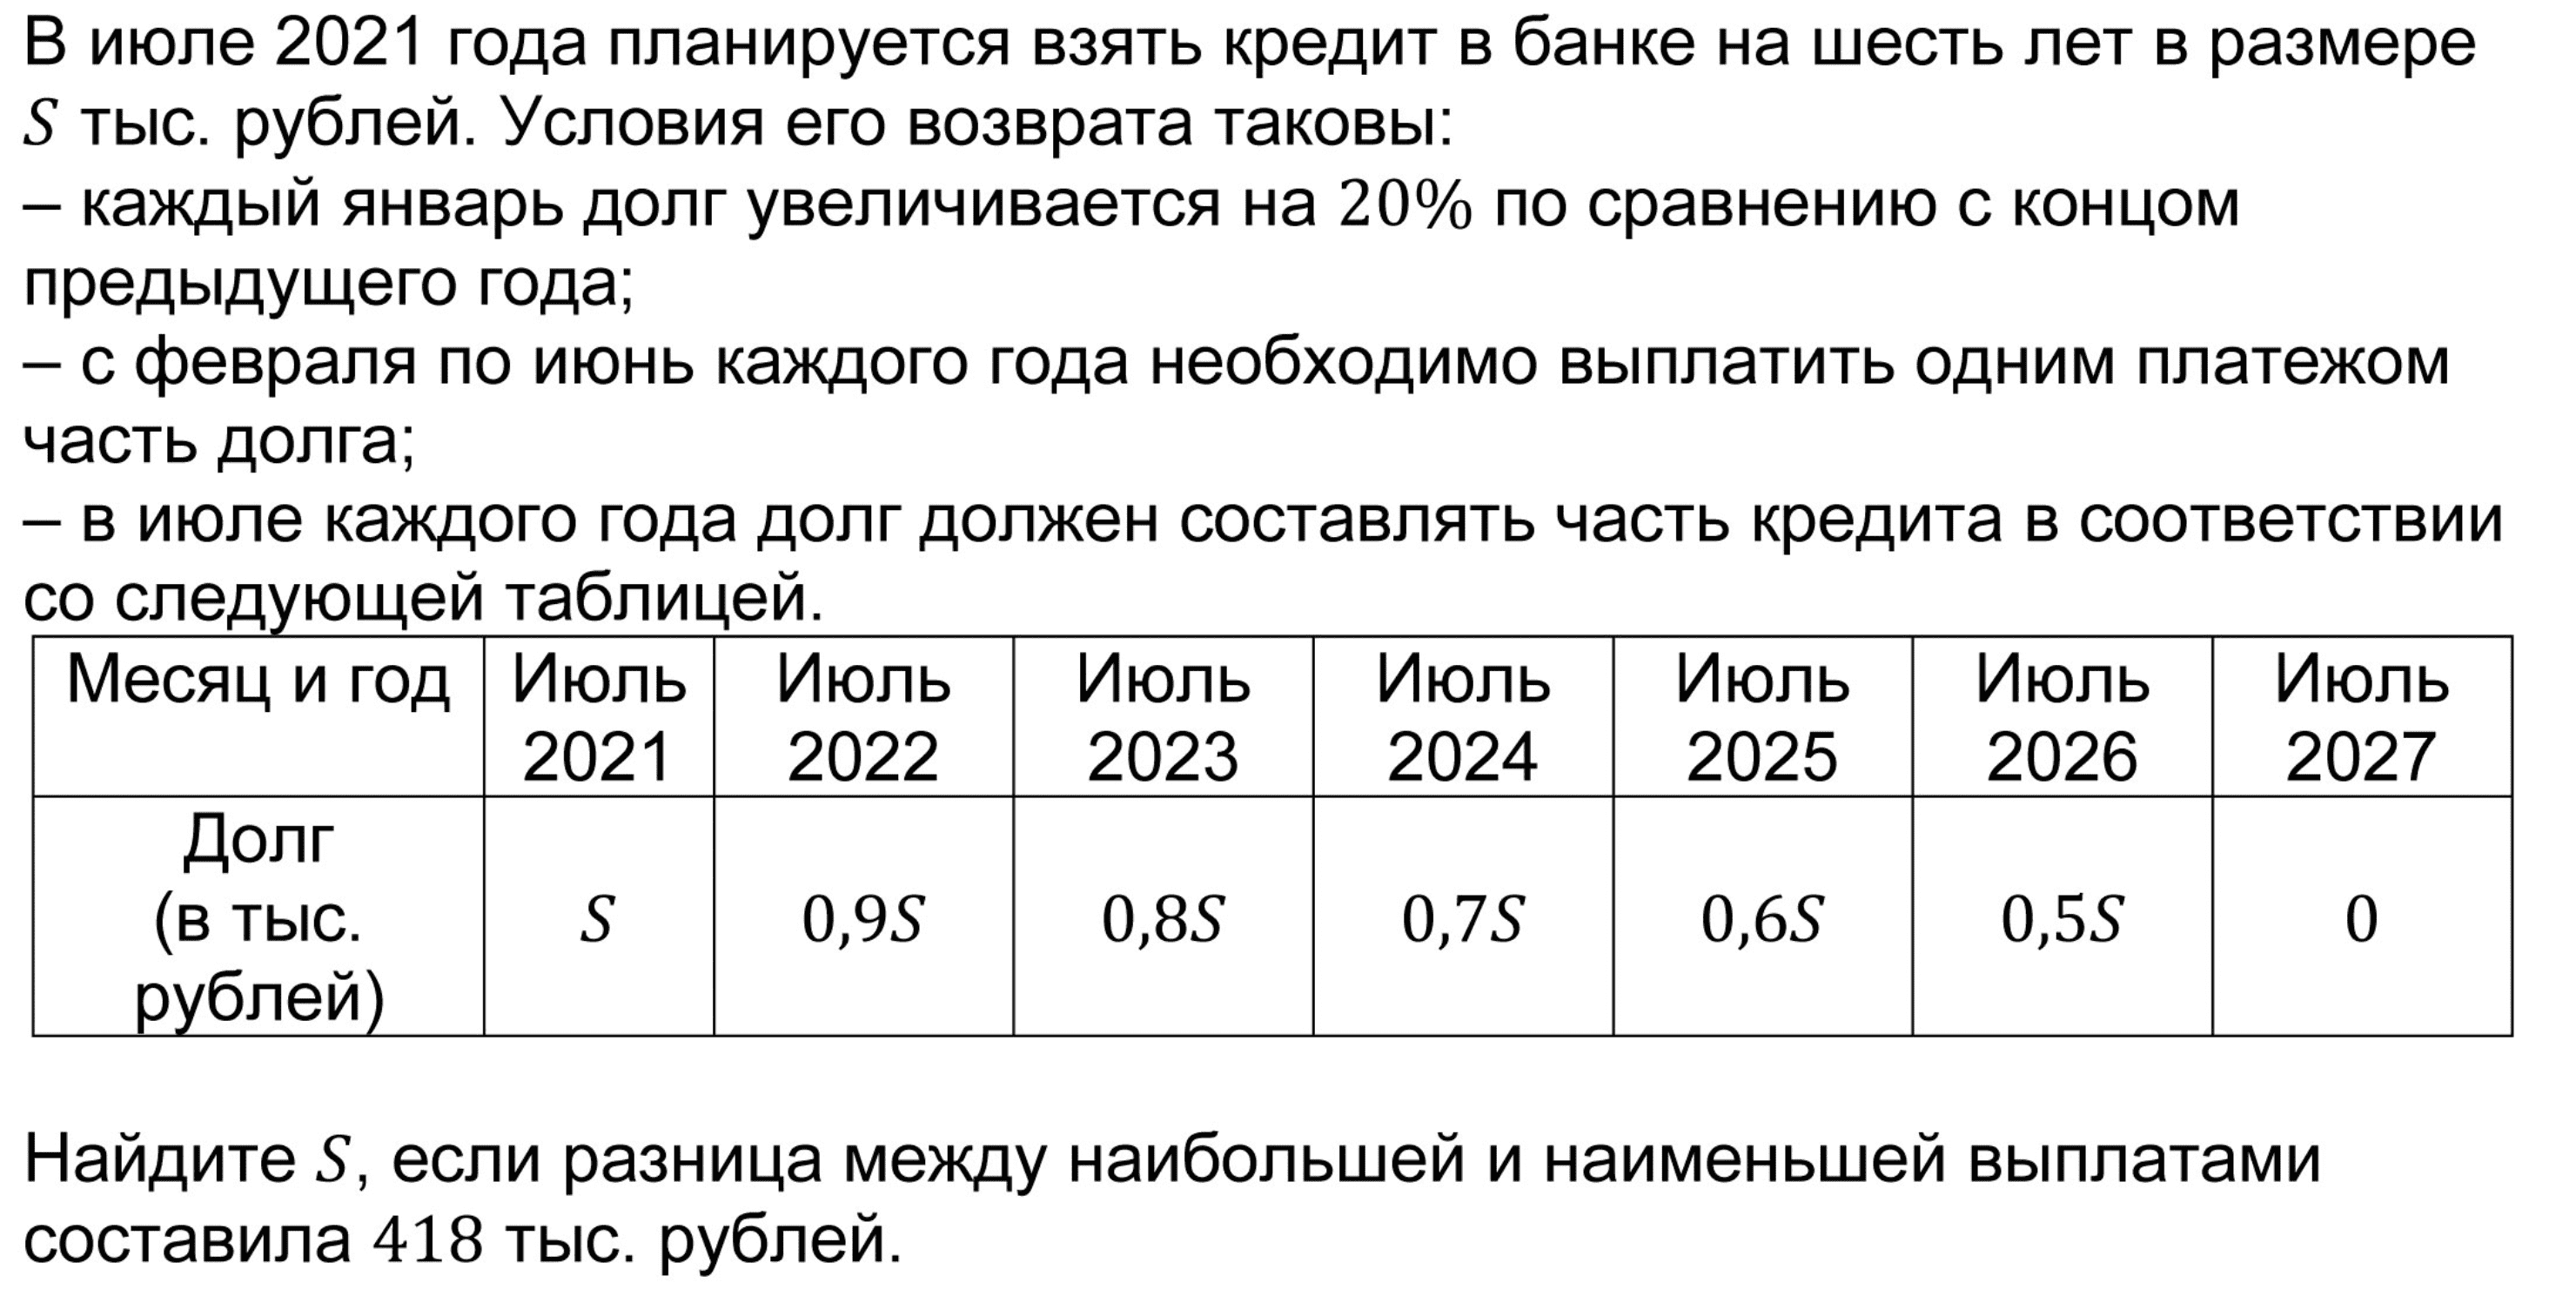 Сколько до 19 июня 2024. В июле 2026 года планируется. В июле 2025 года планируется. В июле 2026 году в банке взяли кредит. В июле 2026 планируется взять кредит.